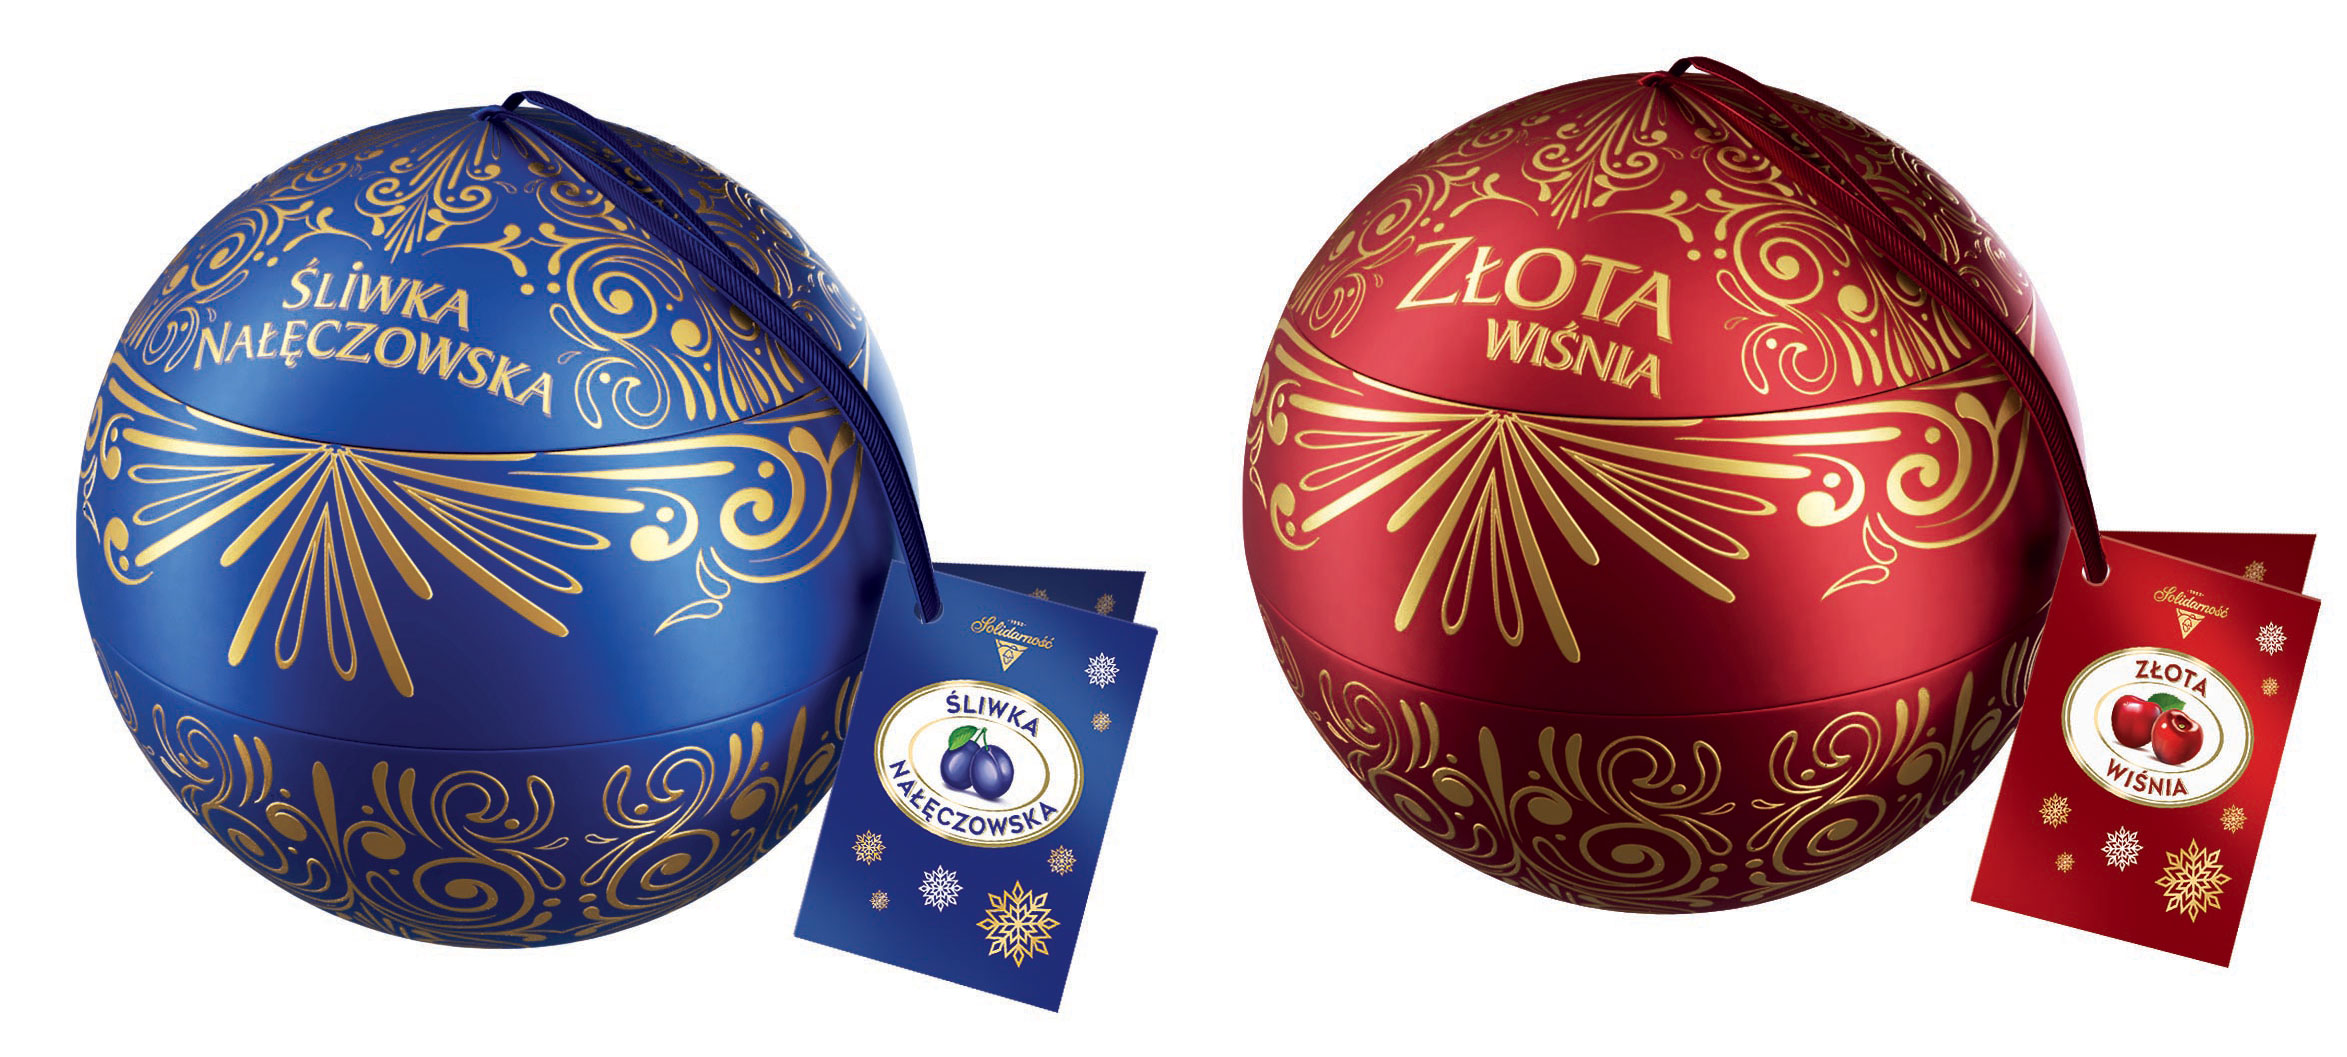 Polskie słodycze na polskie święta  – wyjątkowa oferta Colian  na Boże Narodzenie